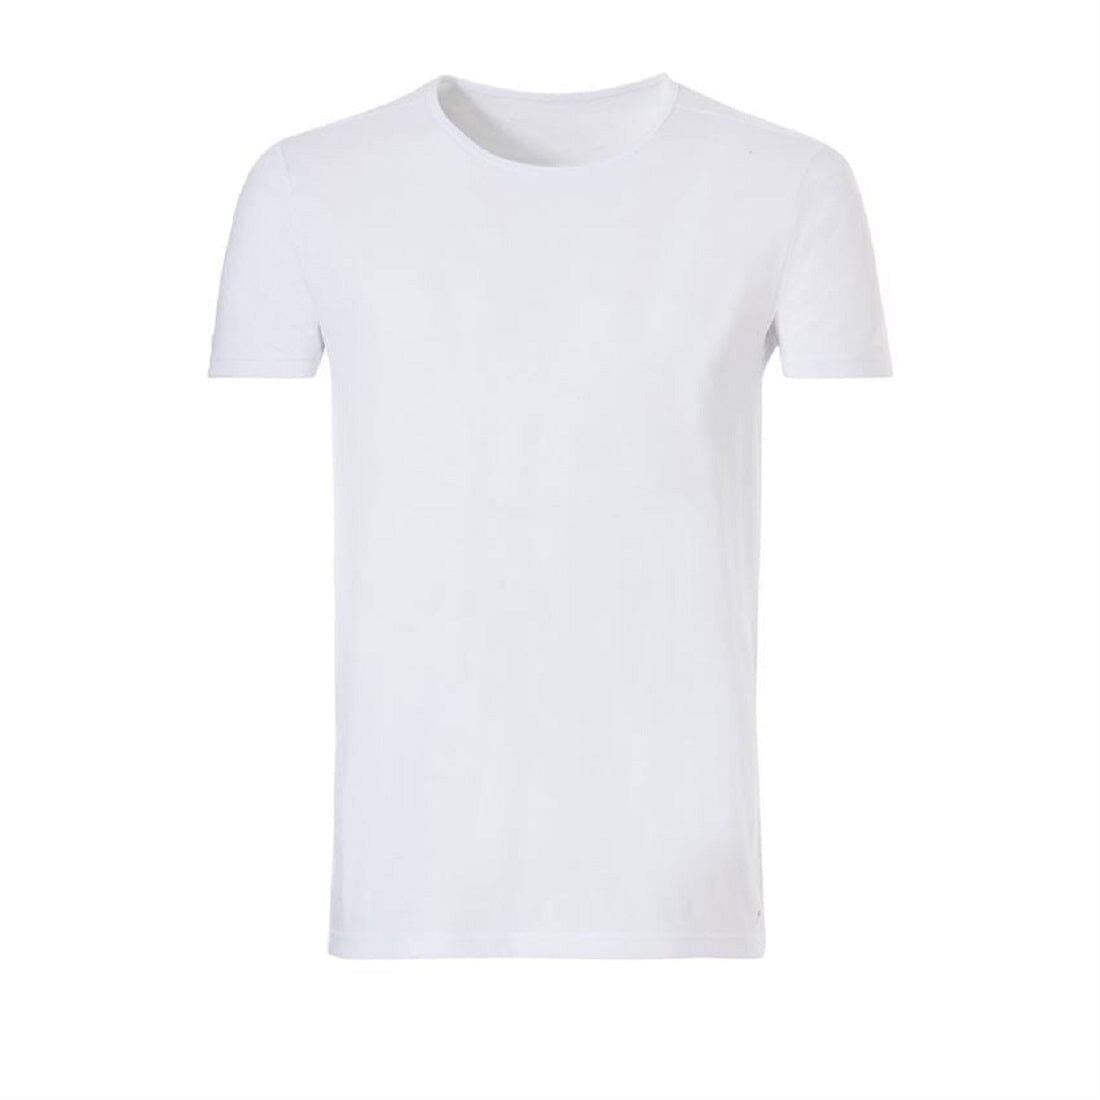 Ten Cate - 308520 - Basic Organic T-shirt - White Shirt Ten Cate 